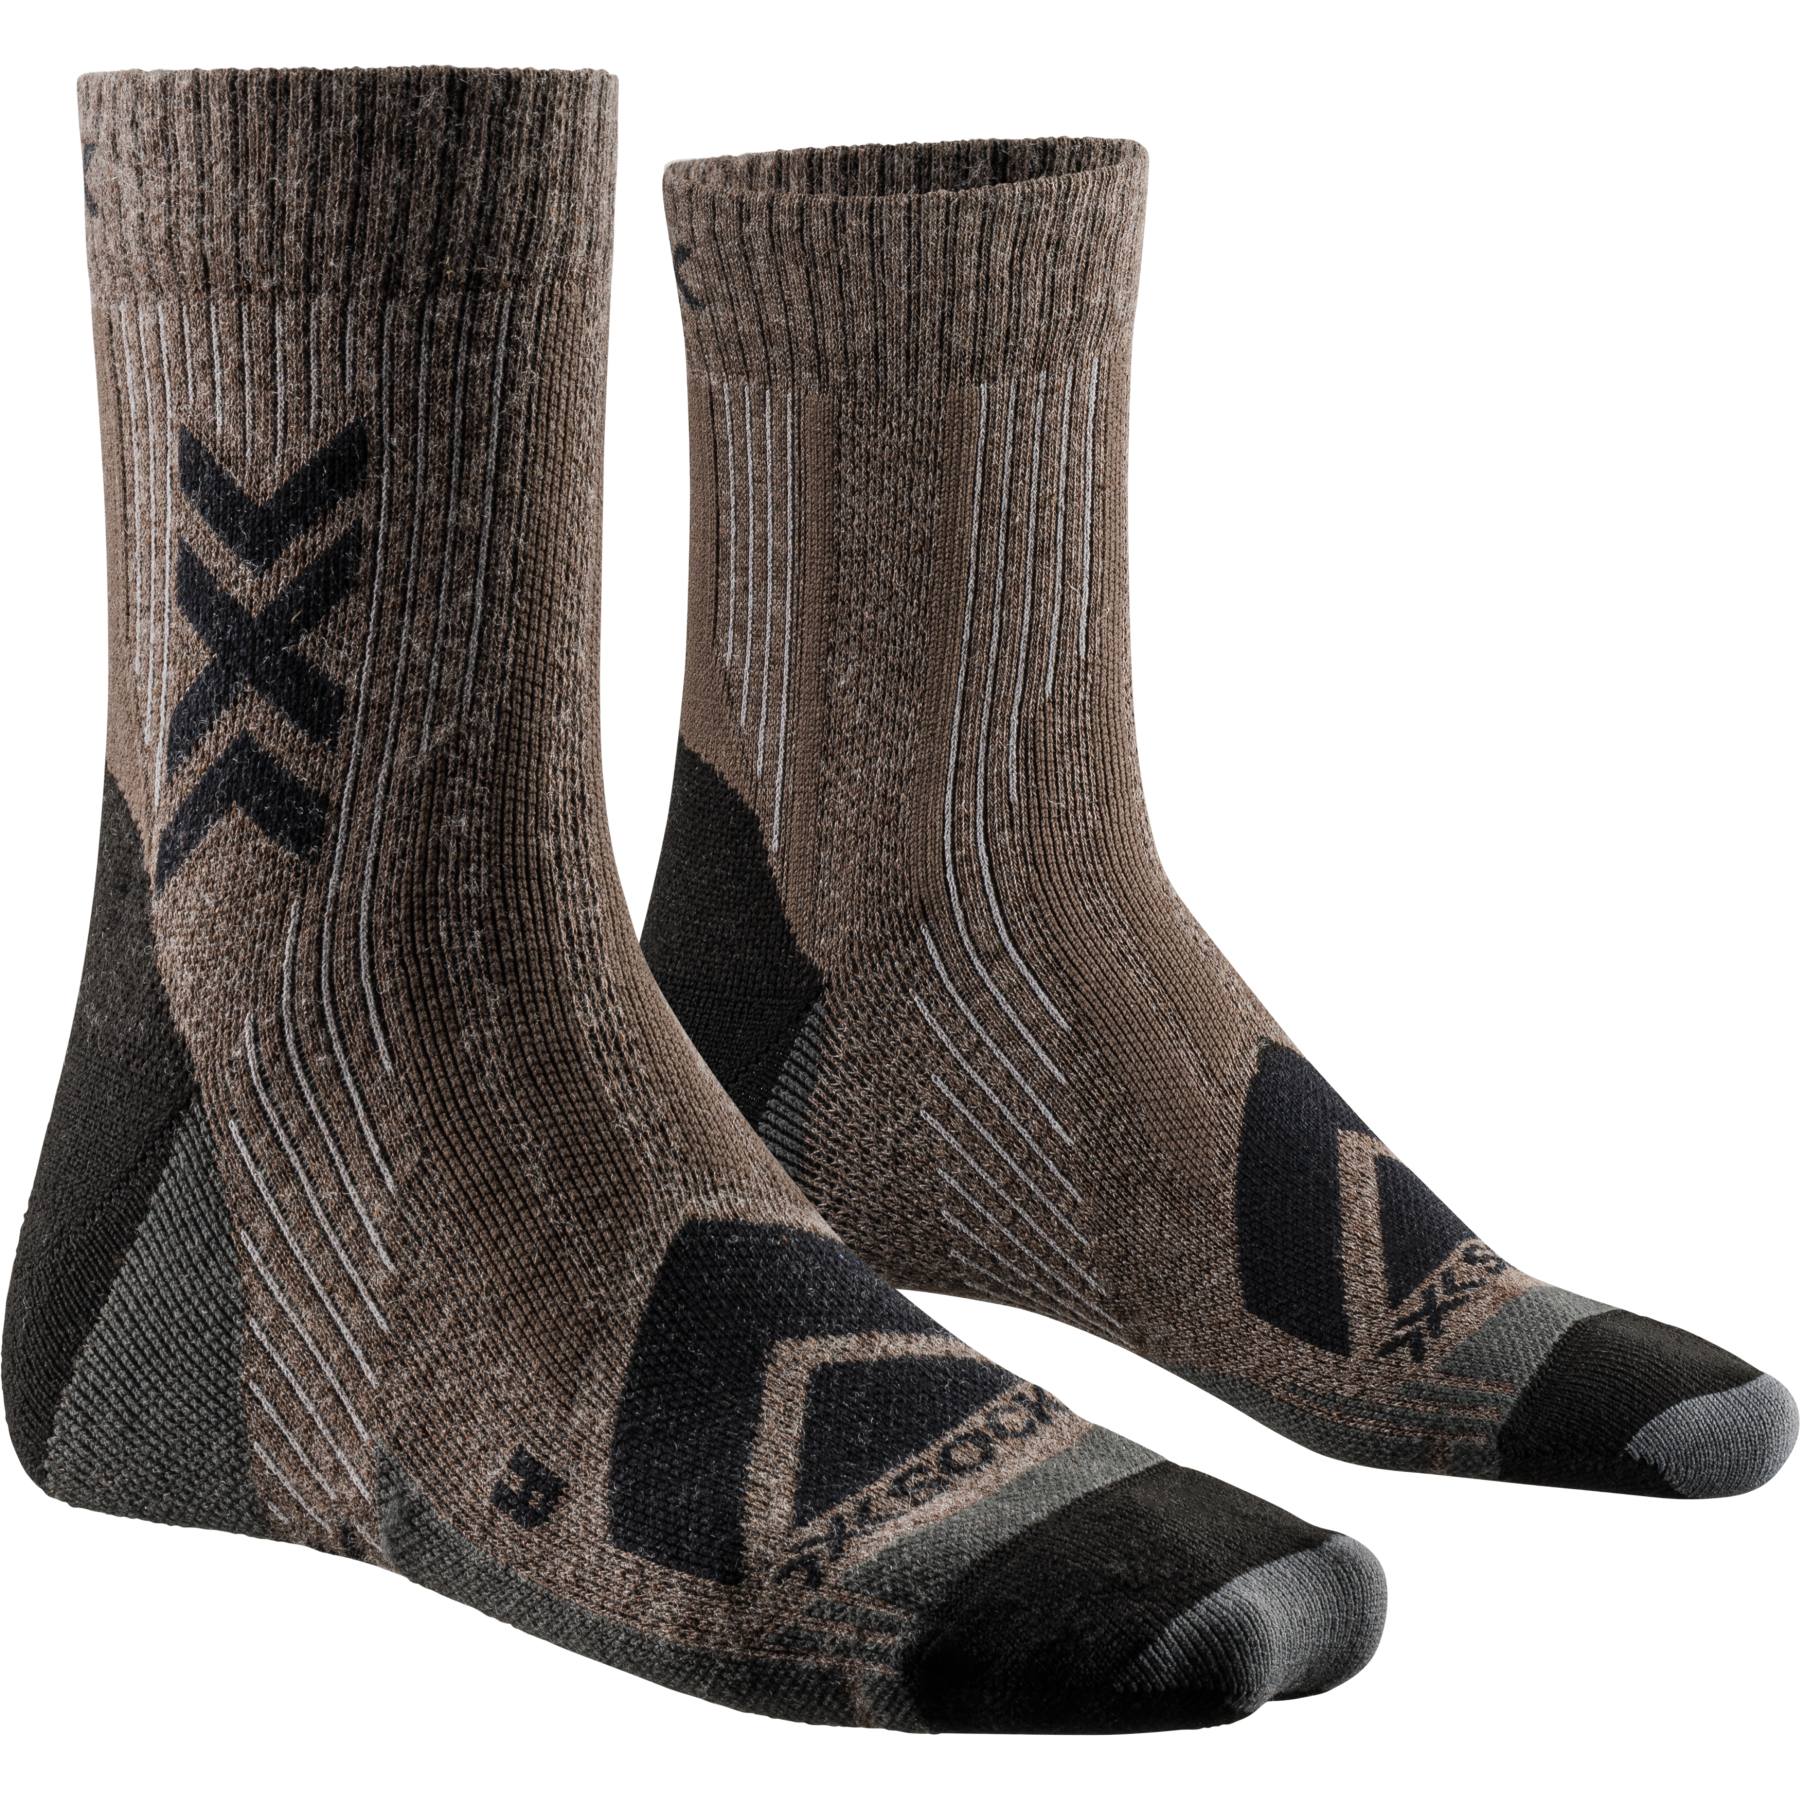 Picture of X-Socks Hike Perform Merino Ankle Socks - brown/black